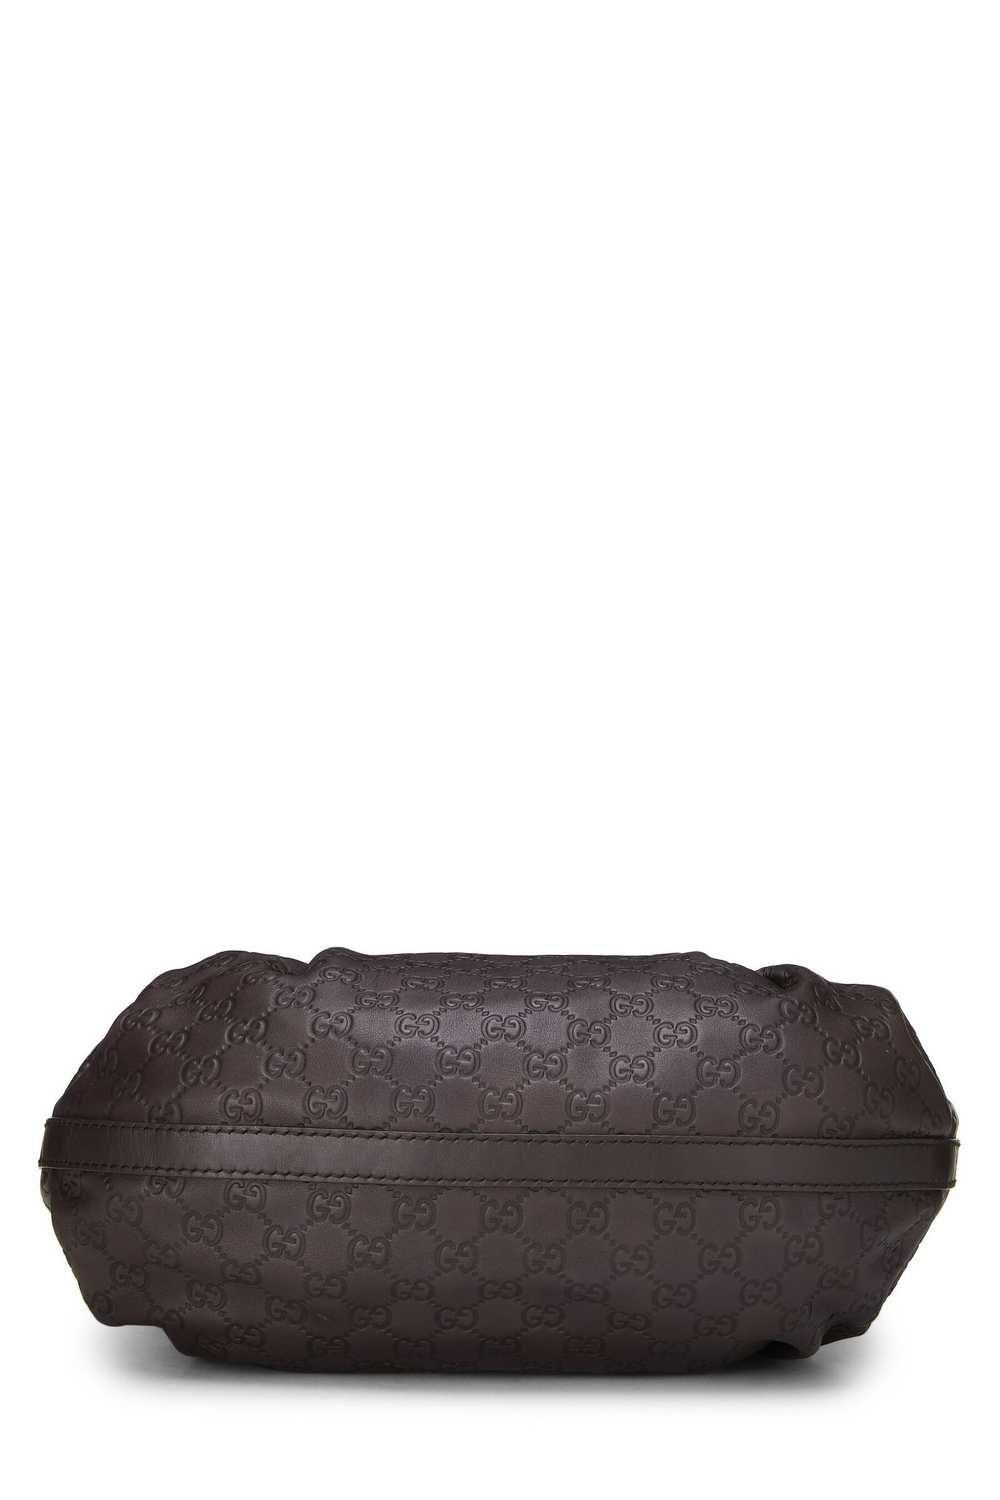 Brown Guccissima Beaded Studded Handbag - image 5